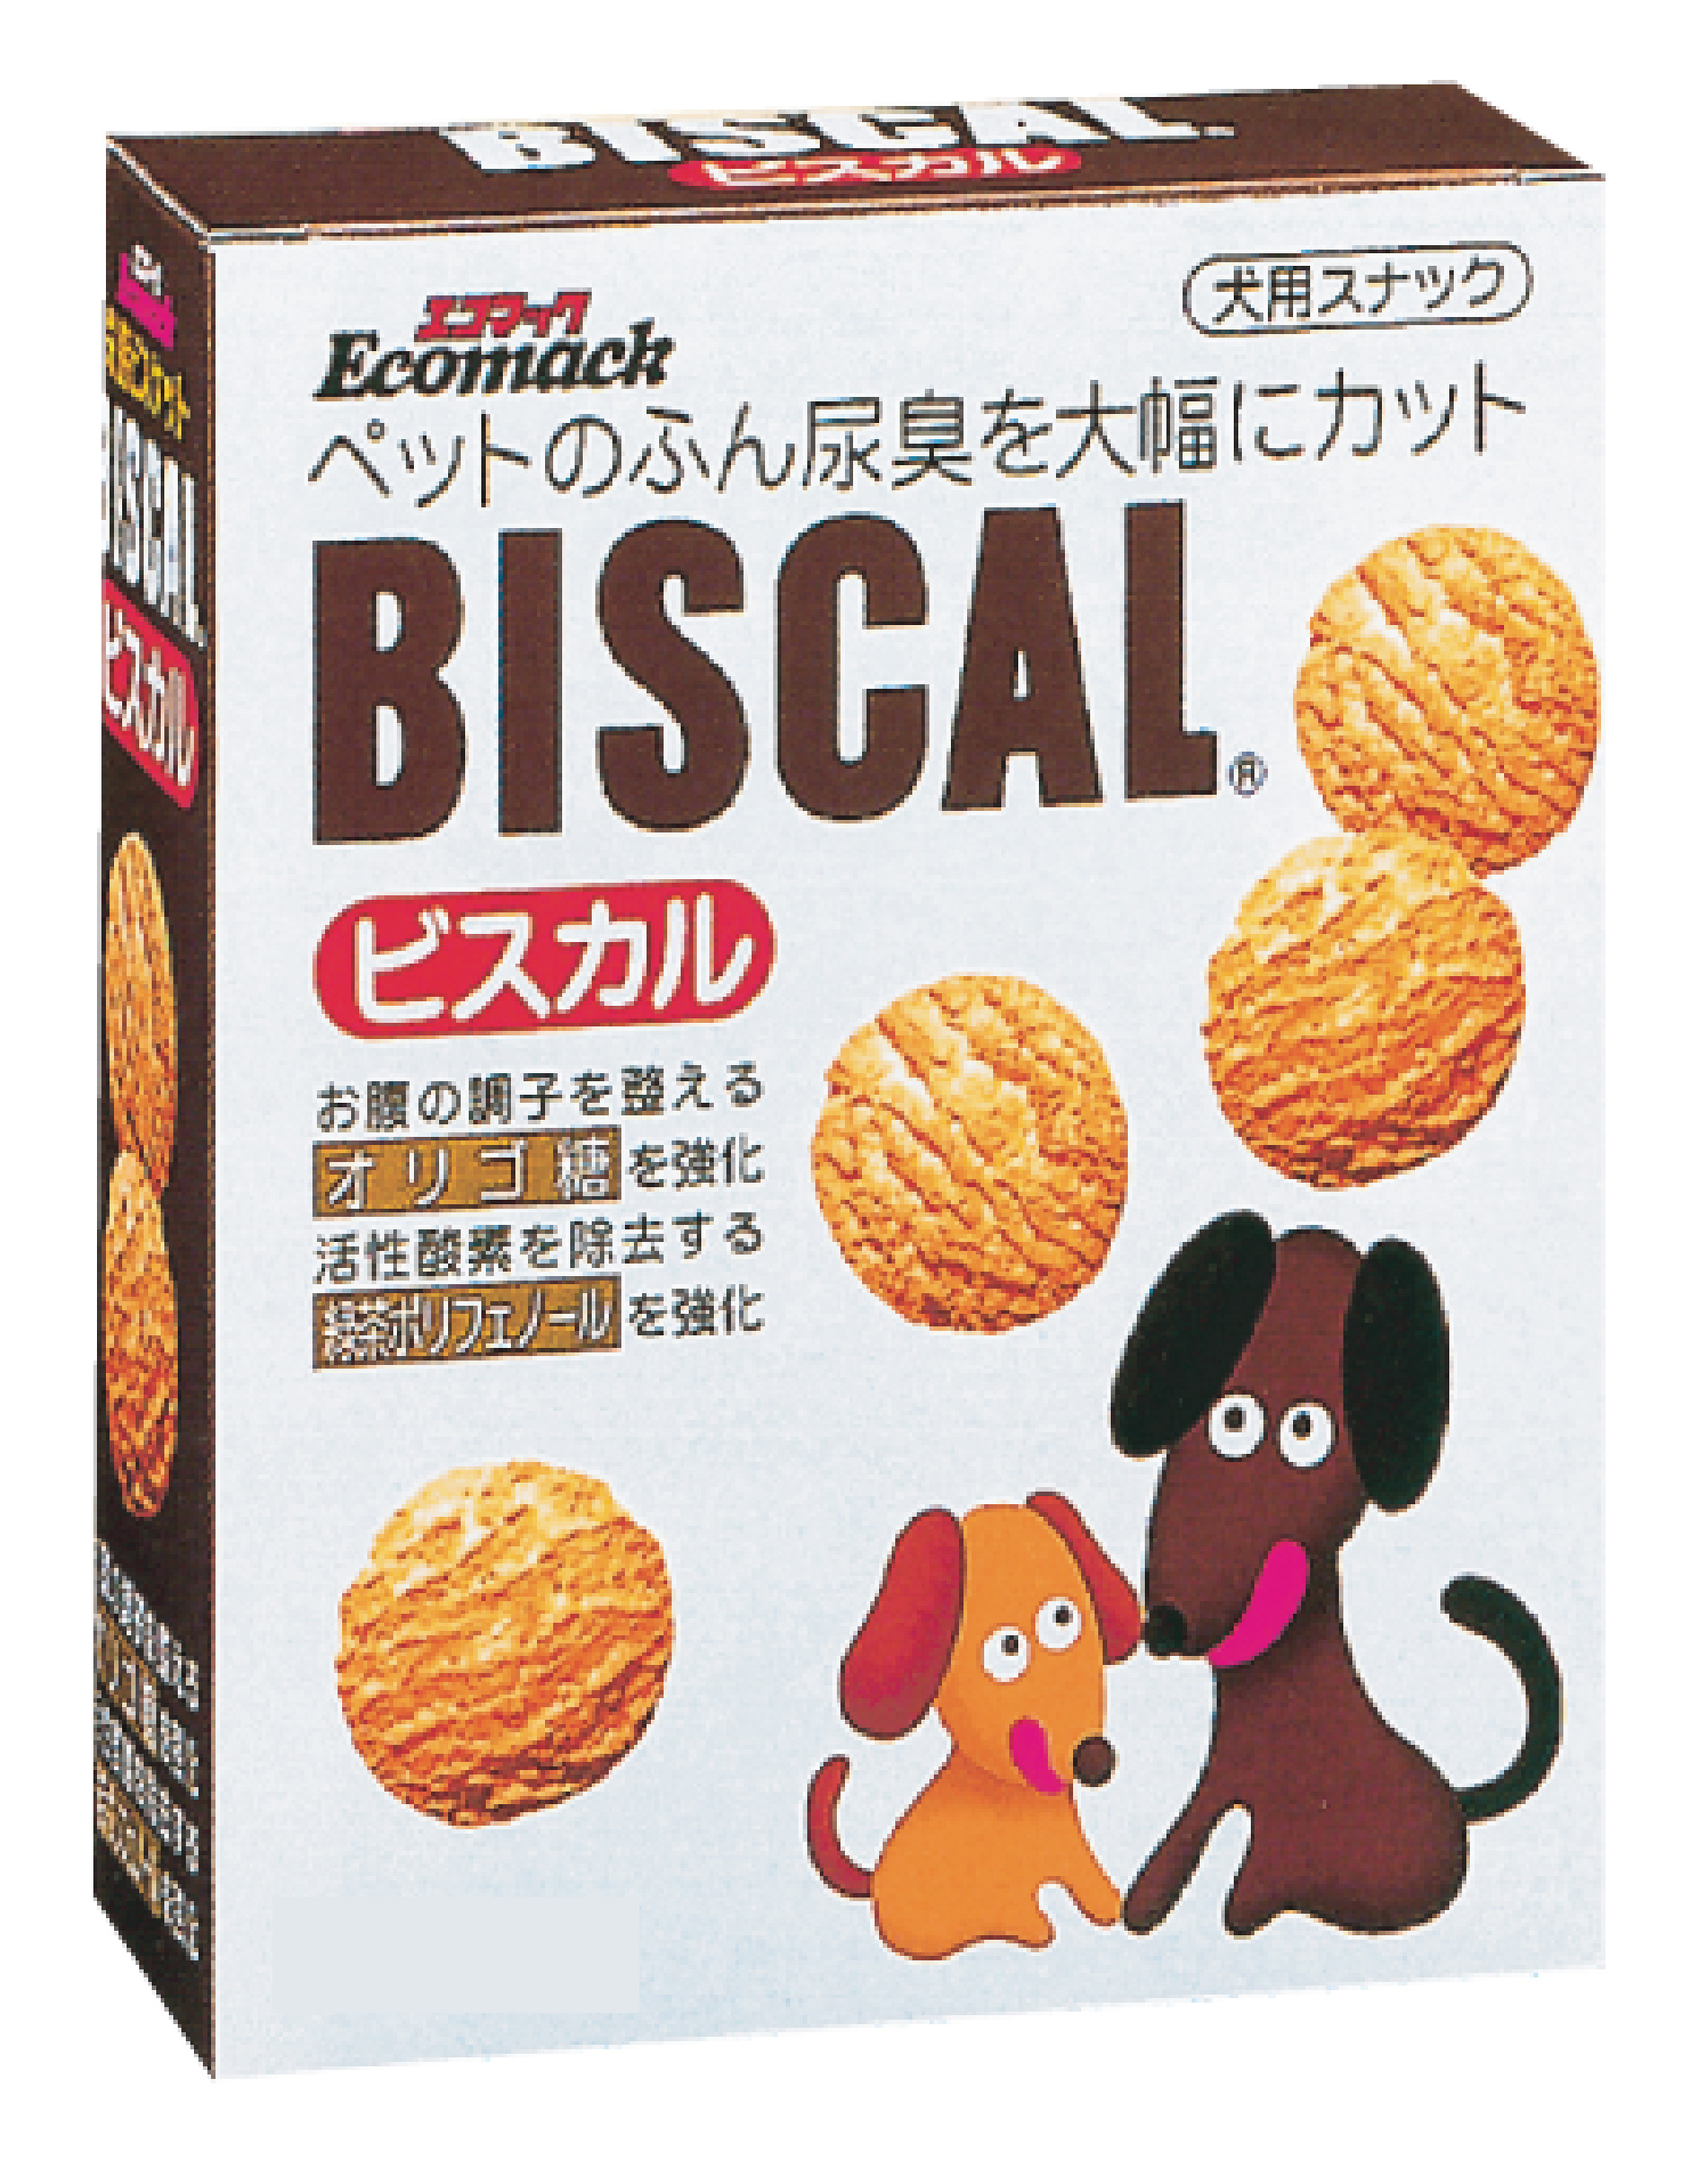 消臭餅乾300g 01129
BISCAL dog cookie-300g